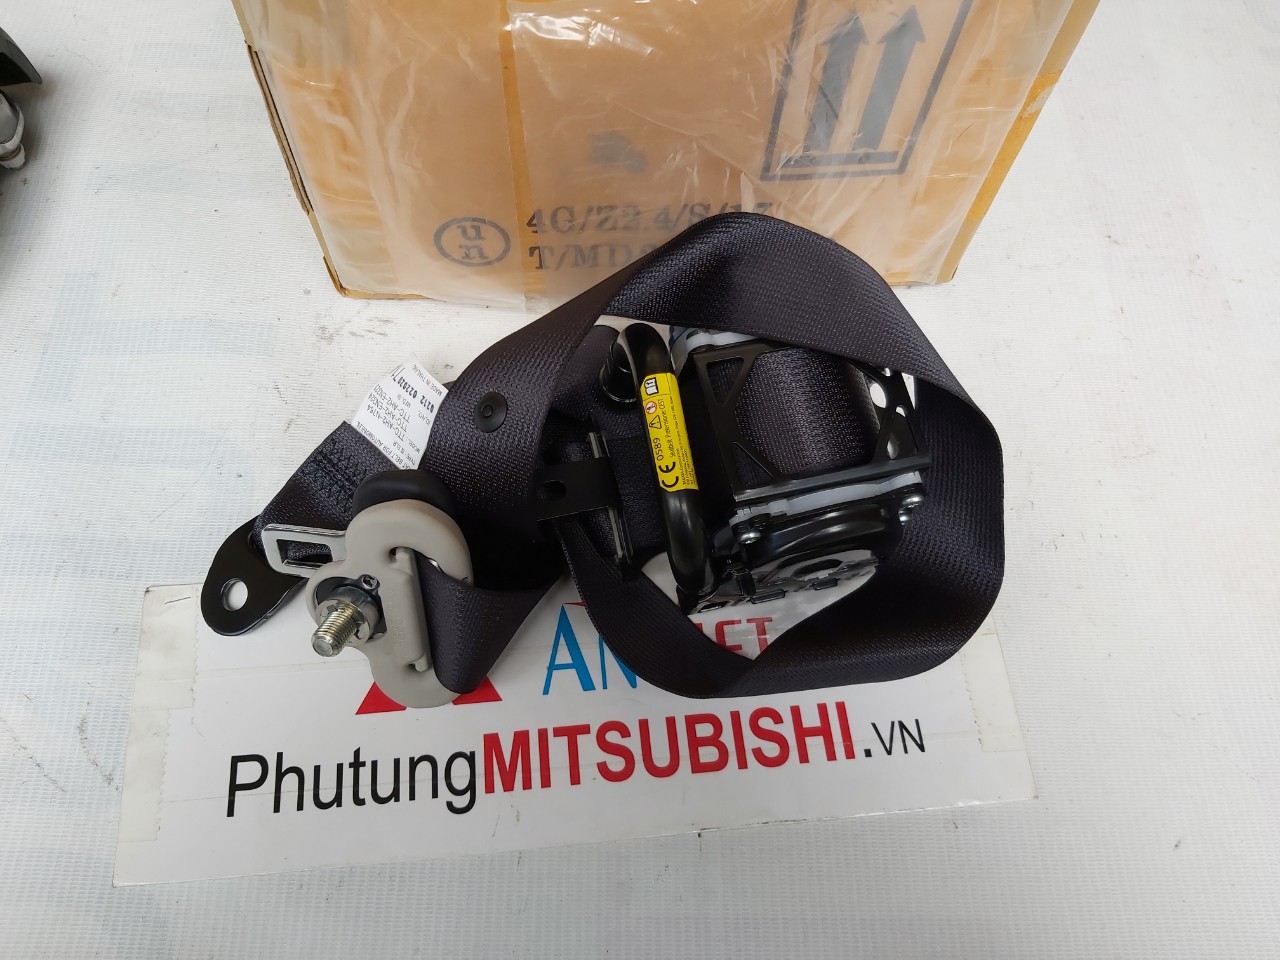 Dây đai an toàn ghế trước xe mitsubishi Triton 2019